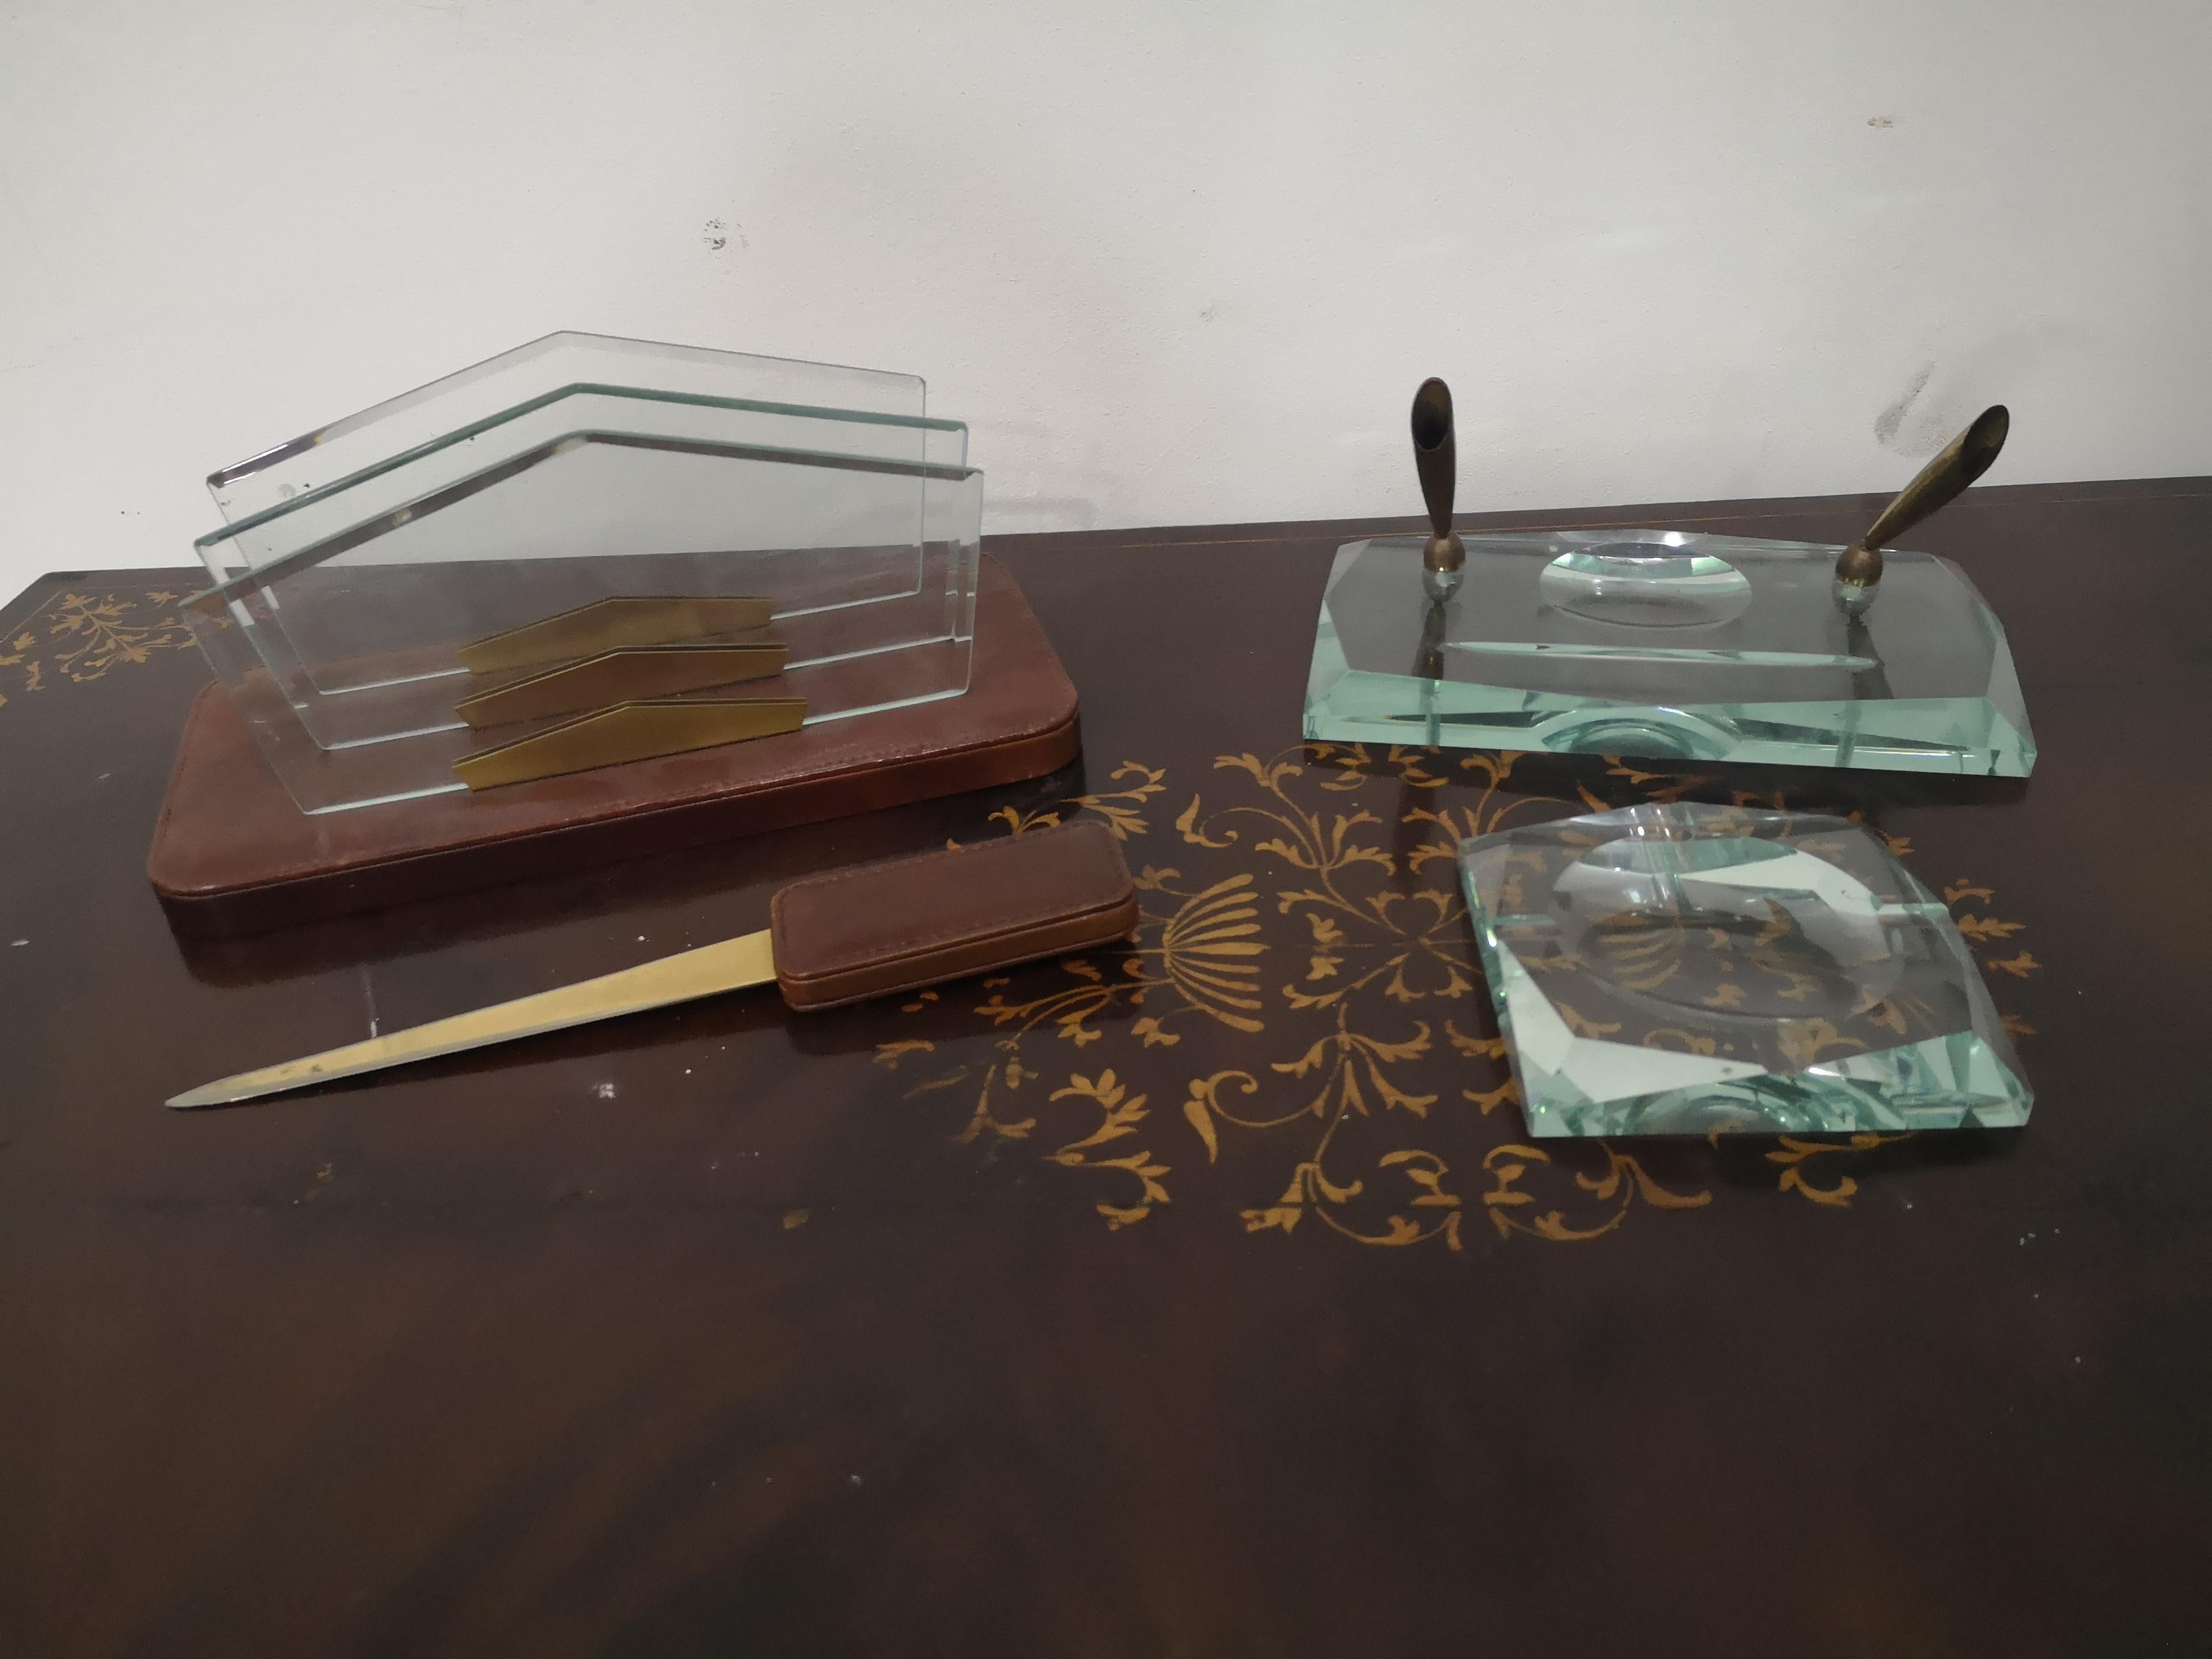 Schreibtischset aus den 70er Jahren, Fontana Arte zugeschrieben
bestehend aus:
Stifthalter aus Glas und Messing, 22 x 13 cm
Korrespondenzkasten aus Leder und Glas 28 x 14 cm
Glas-Aschenbecher 11,5 x 11,5 cm
Brieföffner aus Leder und Messing 26 cm -